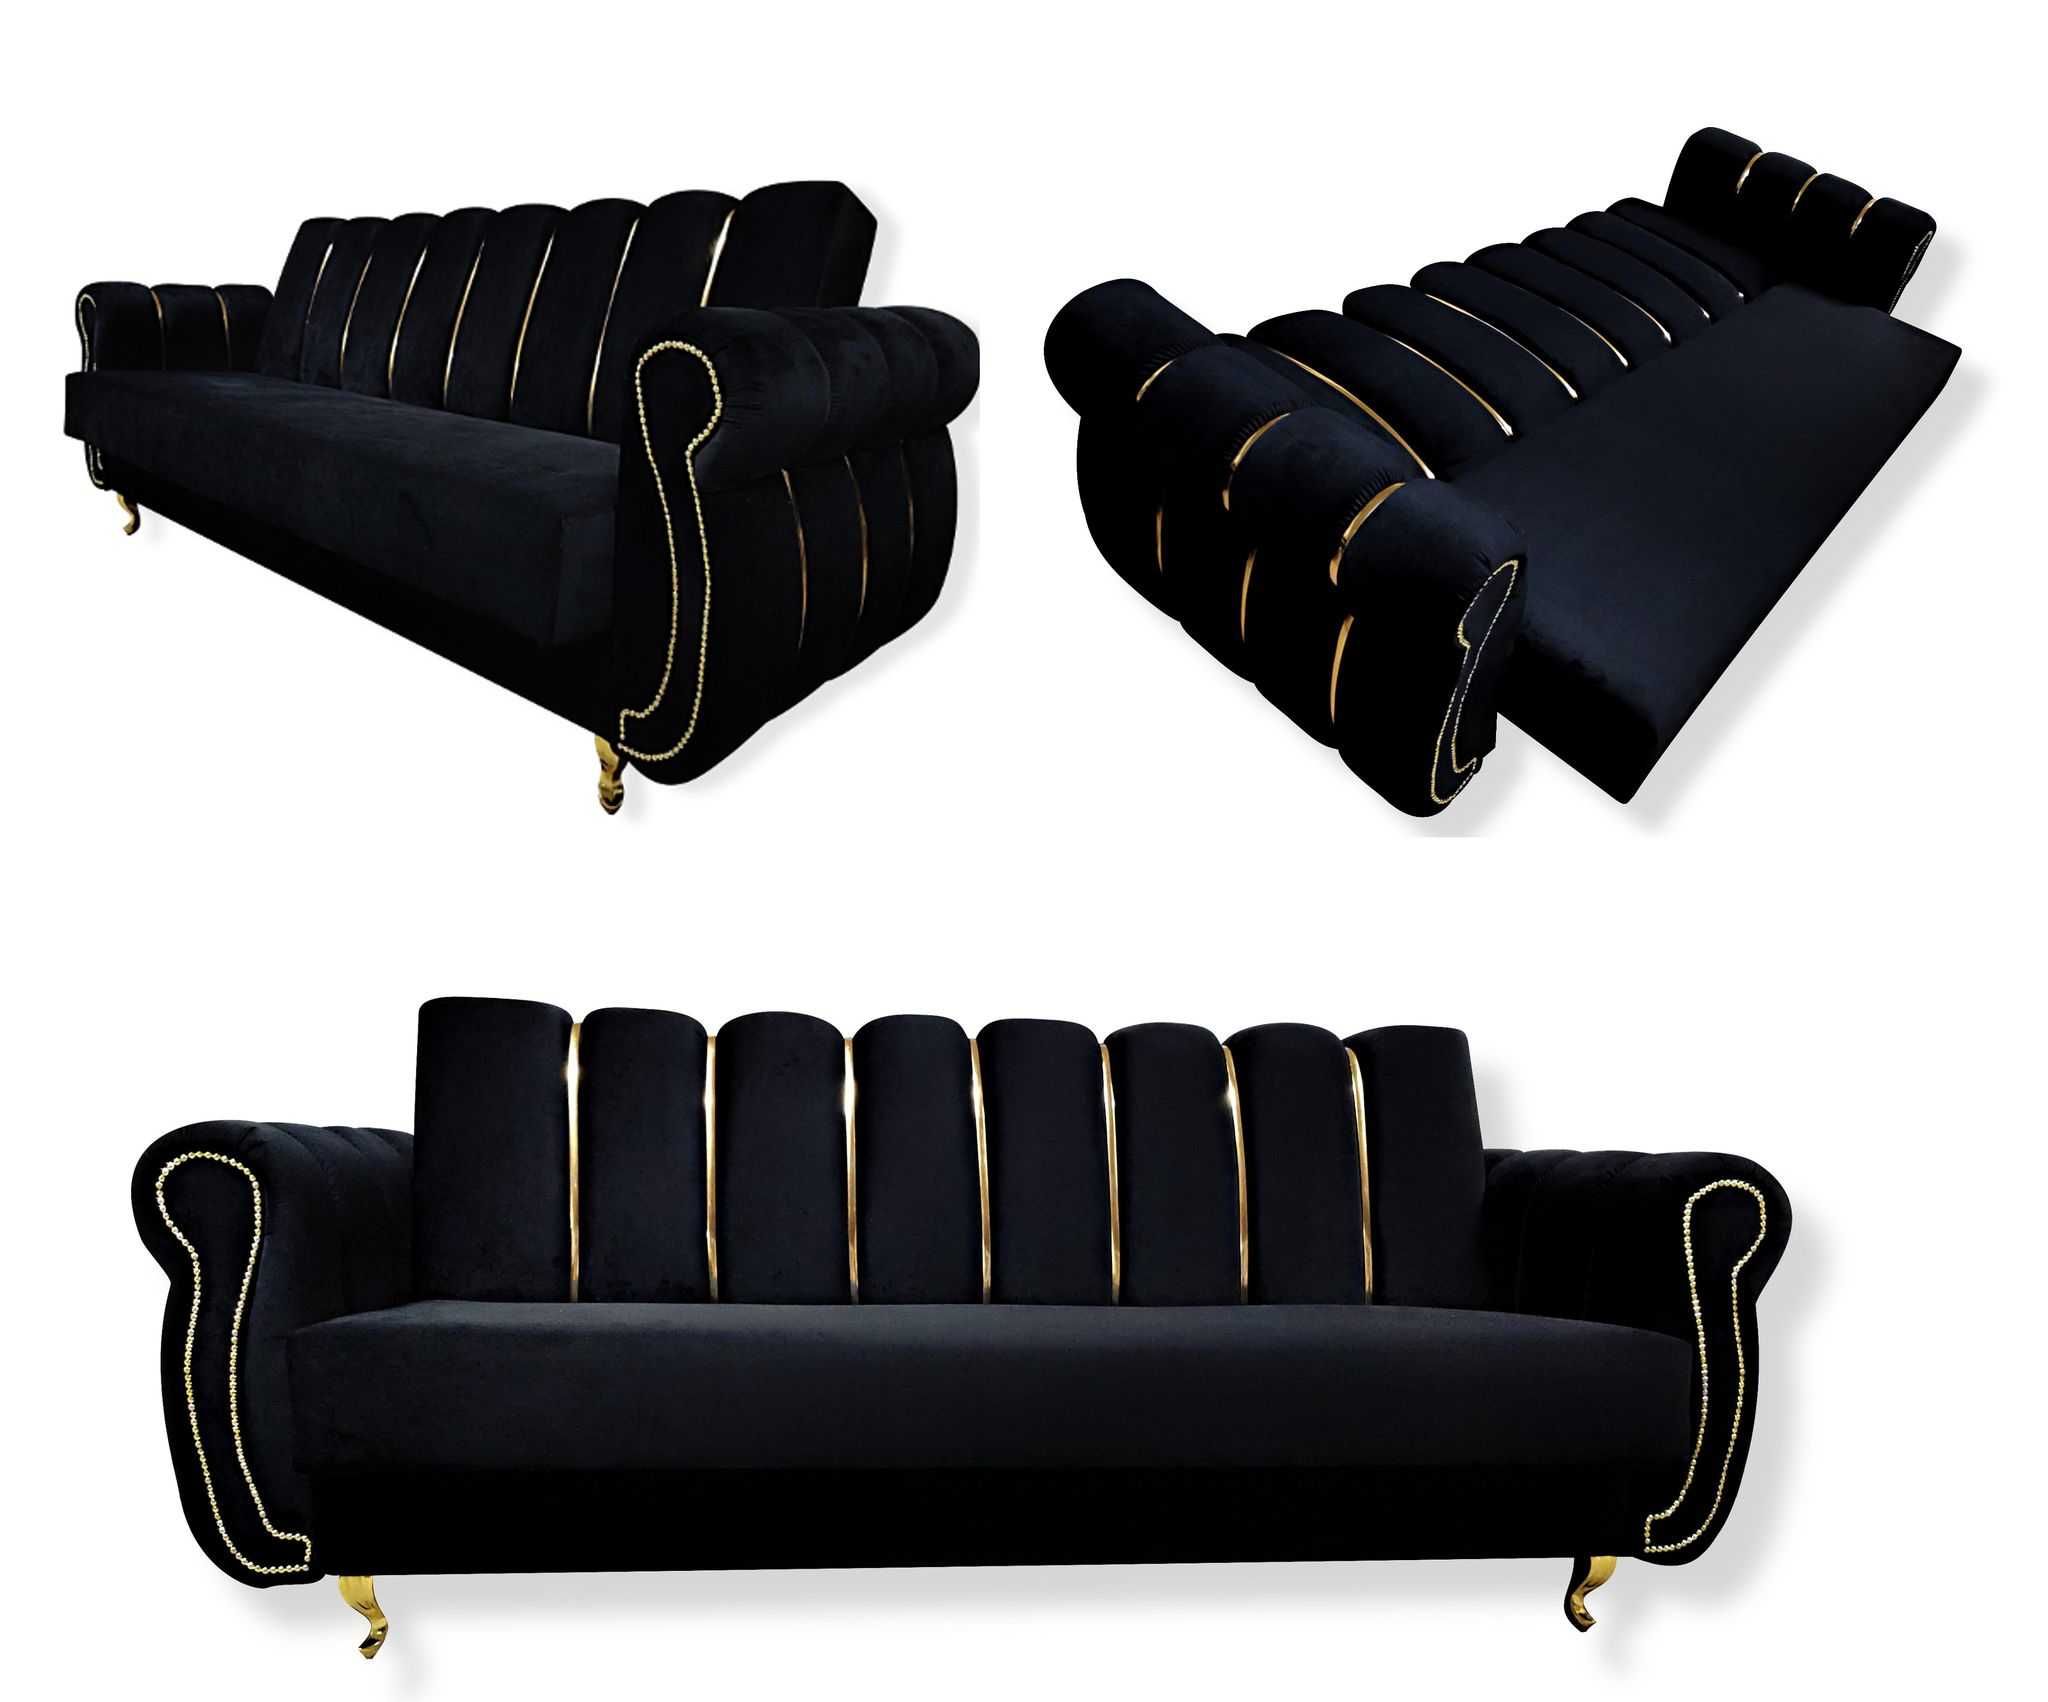 RATY wersalka CHESTERFIELD rozkładana sofa kanapa złota funkcja spania